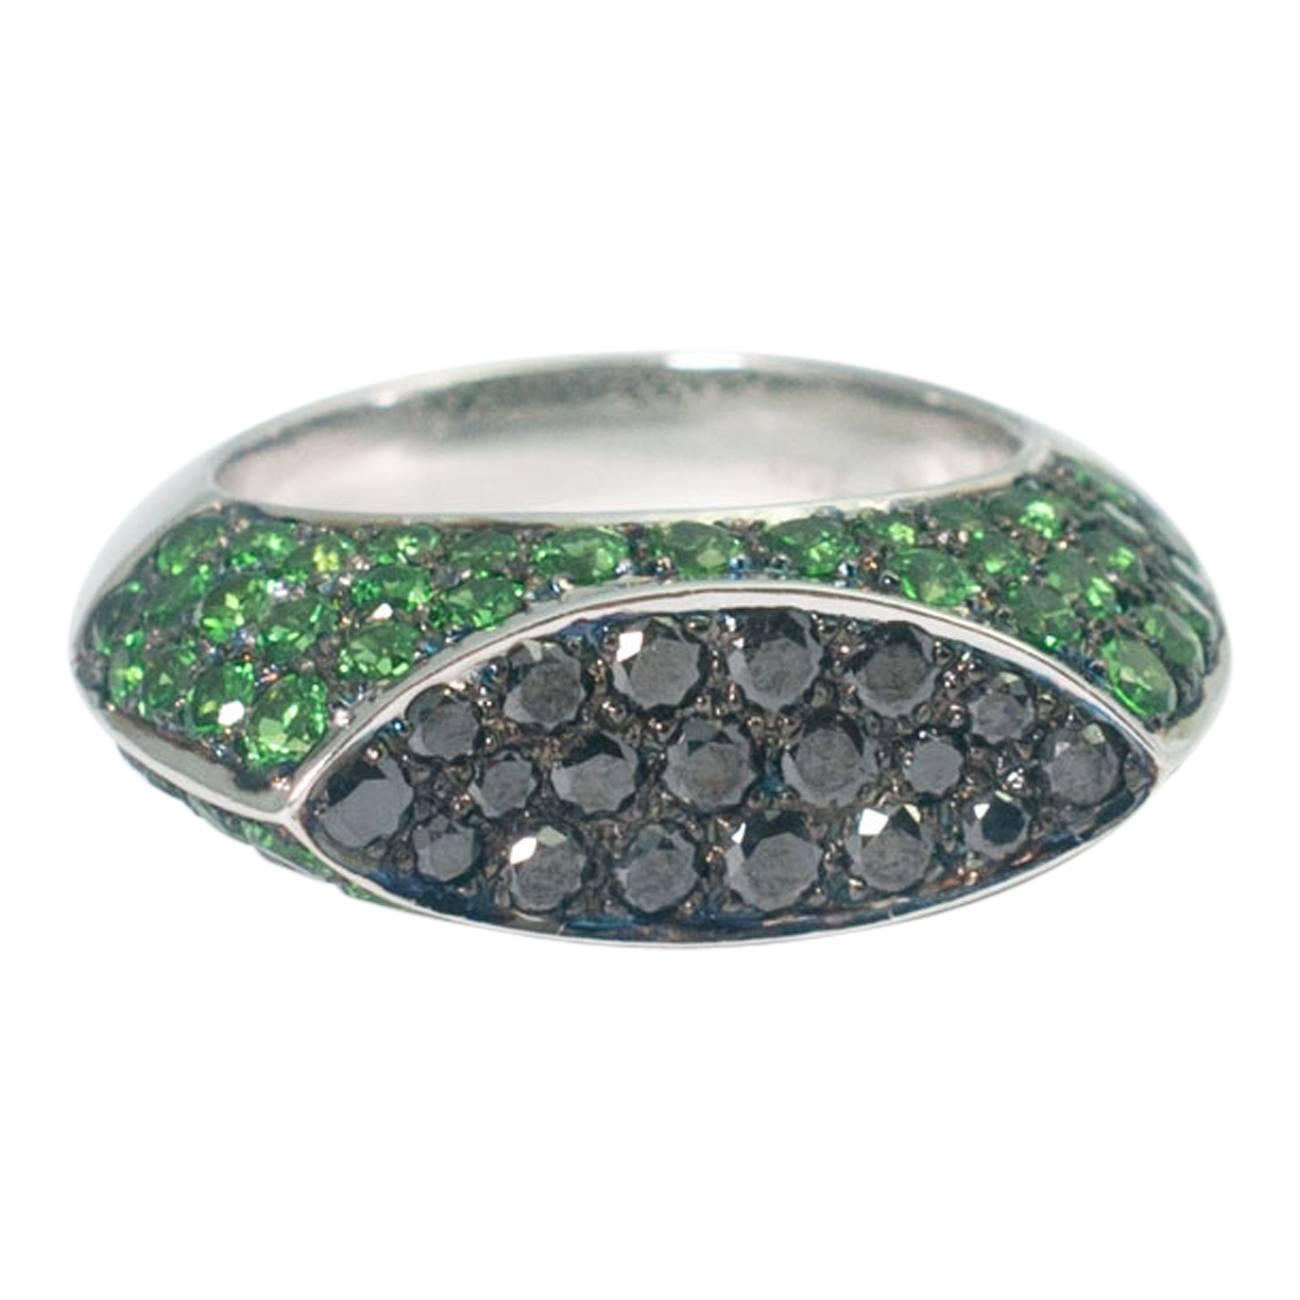 Chatila Tsavorite Garnet Black Diamond Ring For Sale